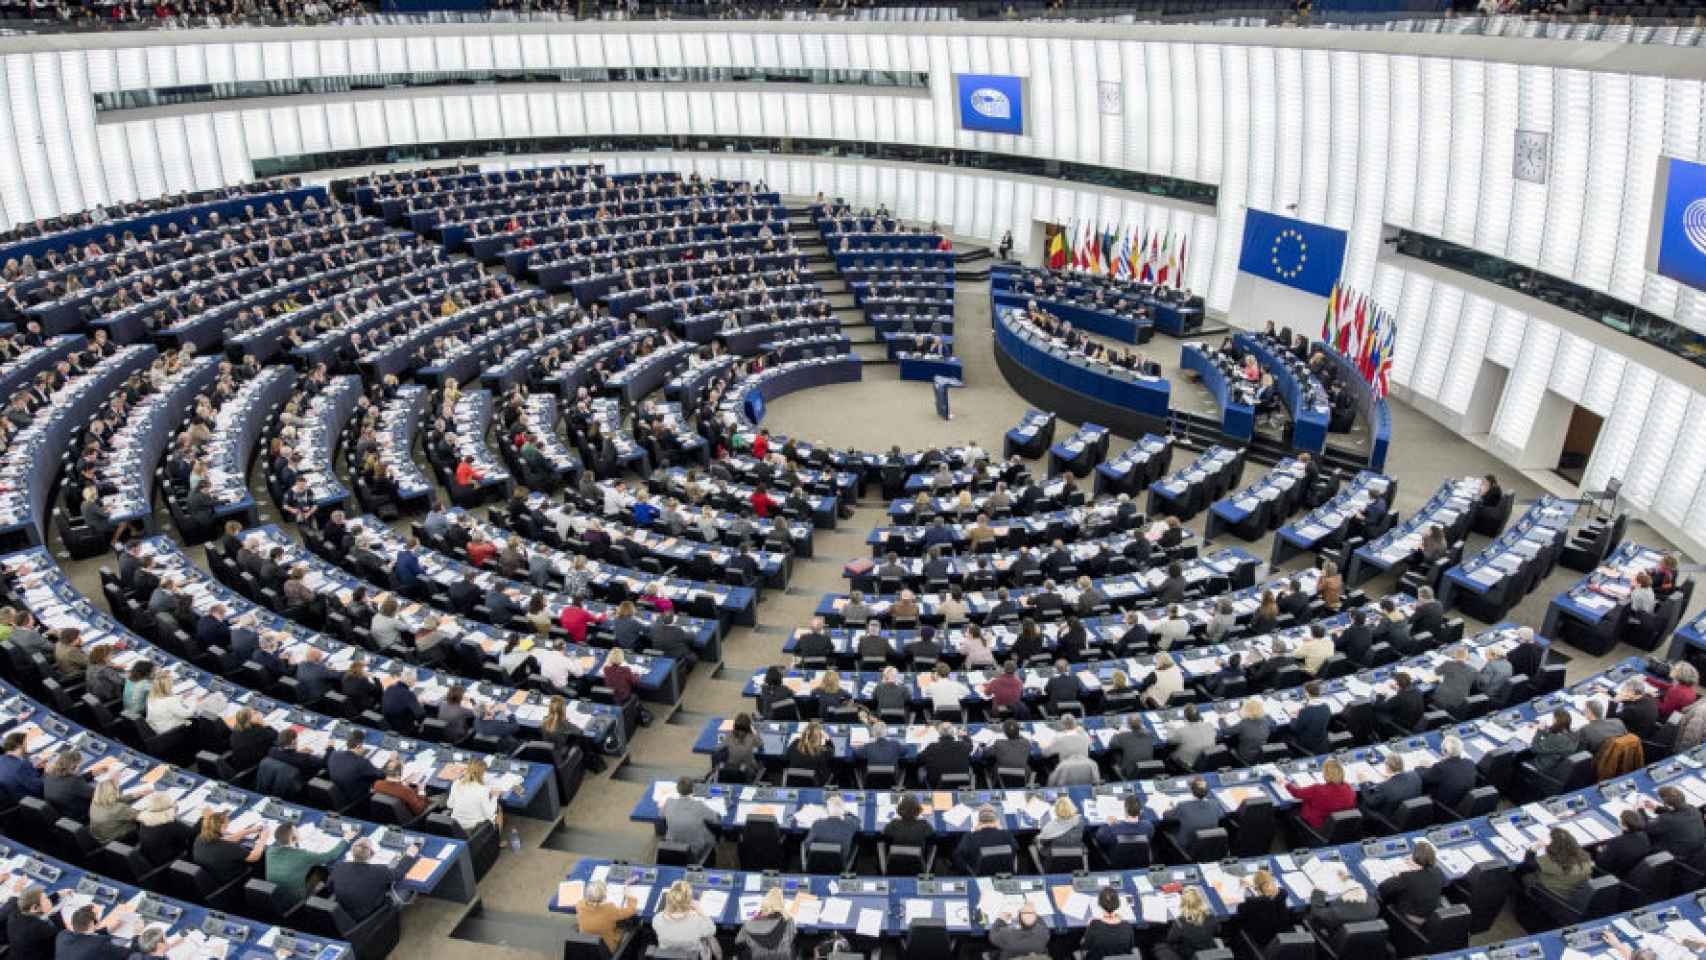 Vista general del hemiciclo del Parlamento Europoe en Estrasburgo.